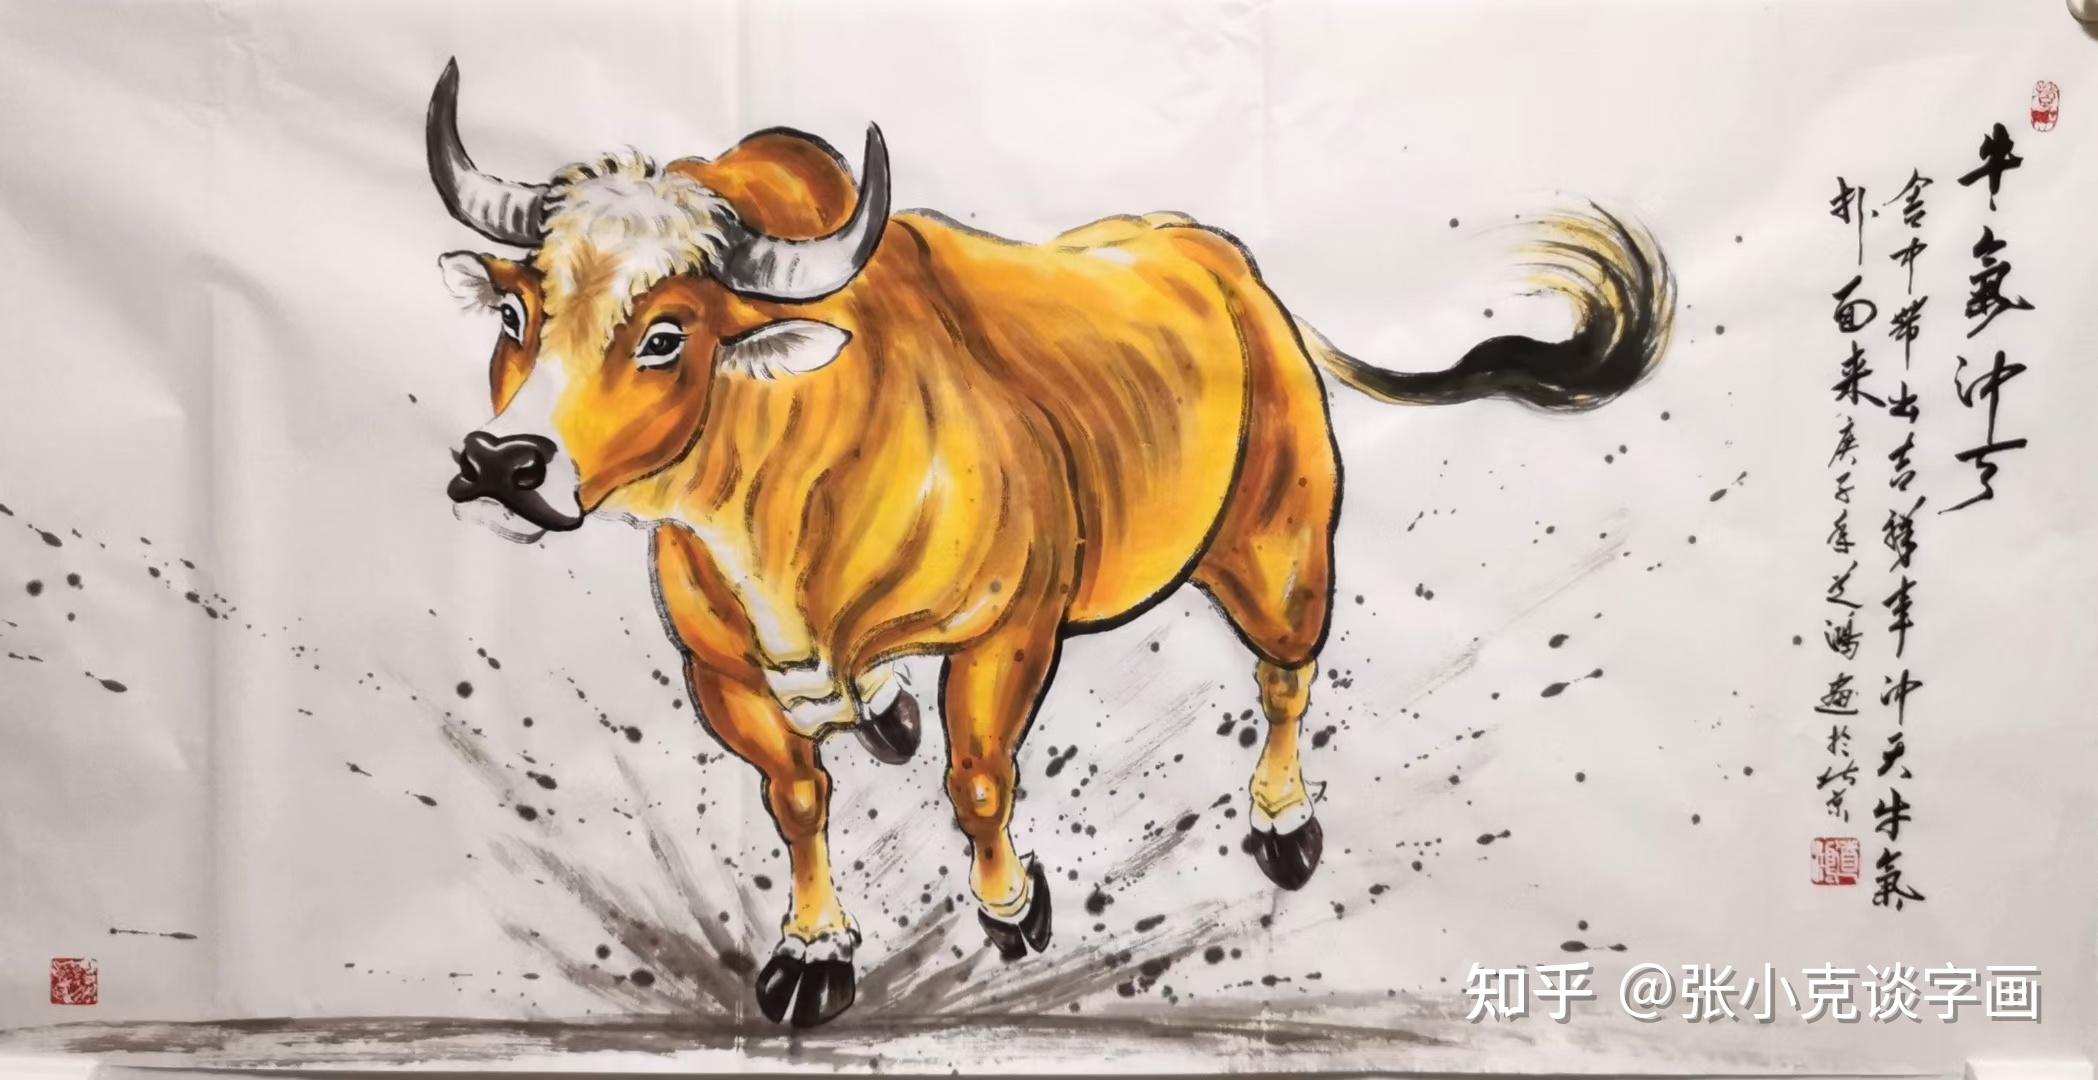 2016年4月作品《天行健》,《龙行天下》被赵本山徒弟,著名表演艺术家